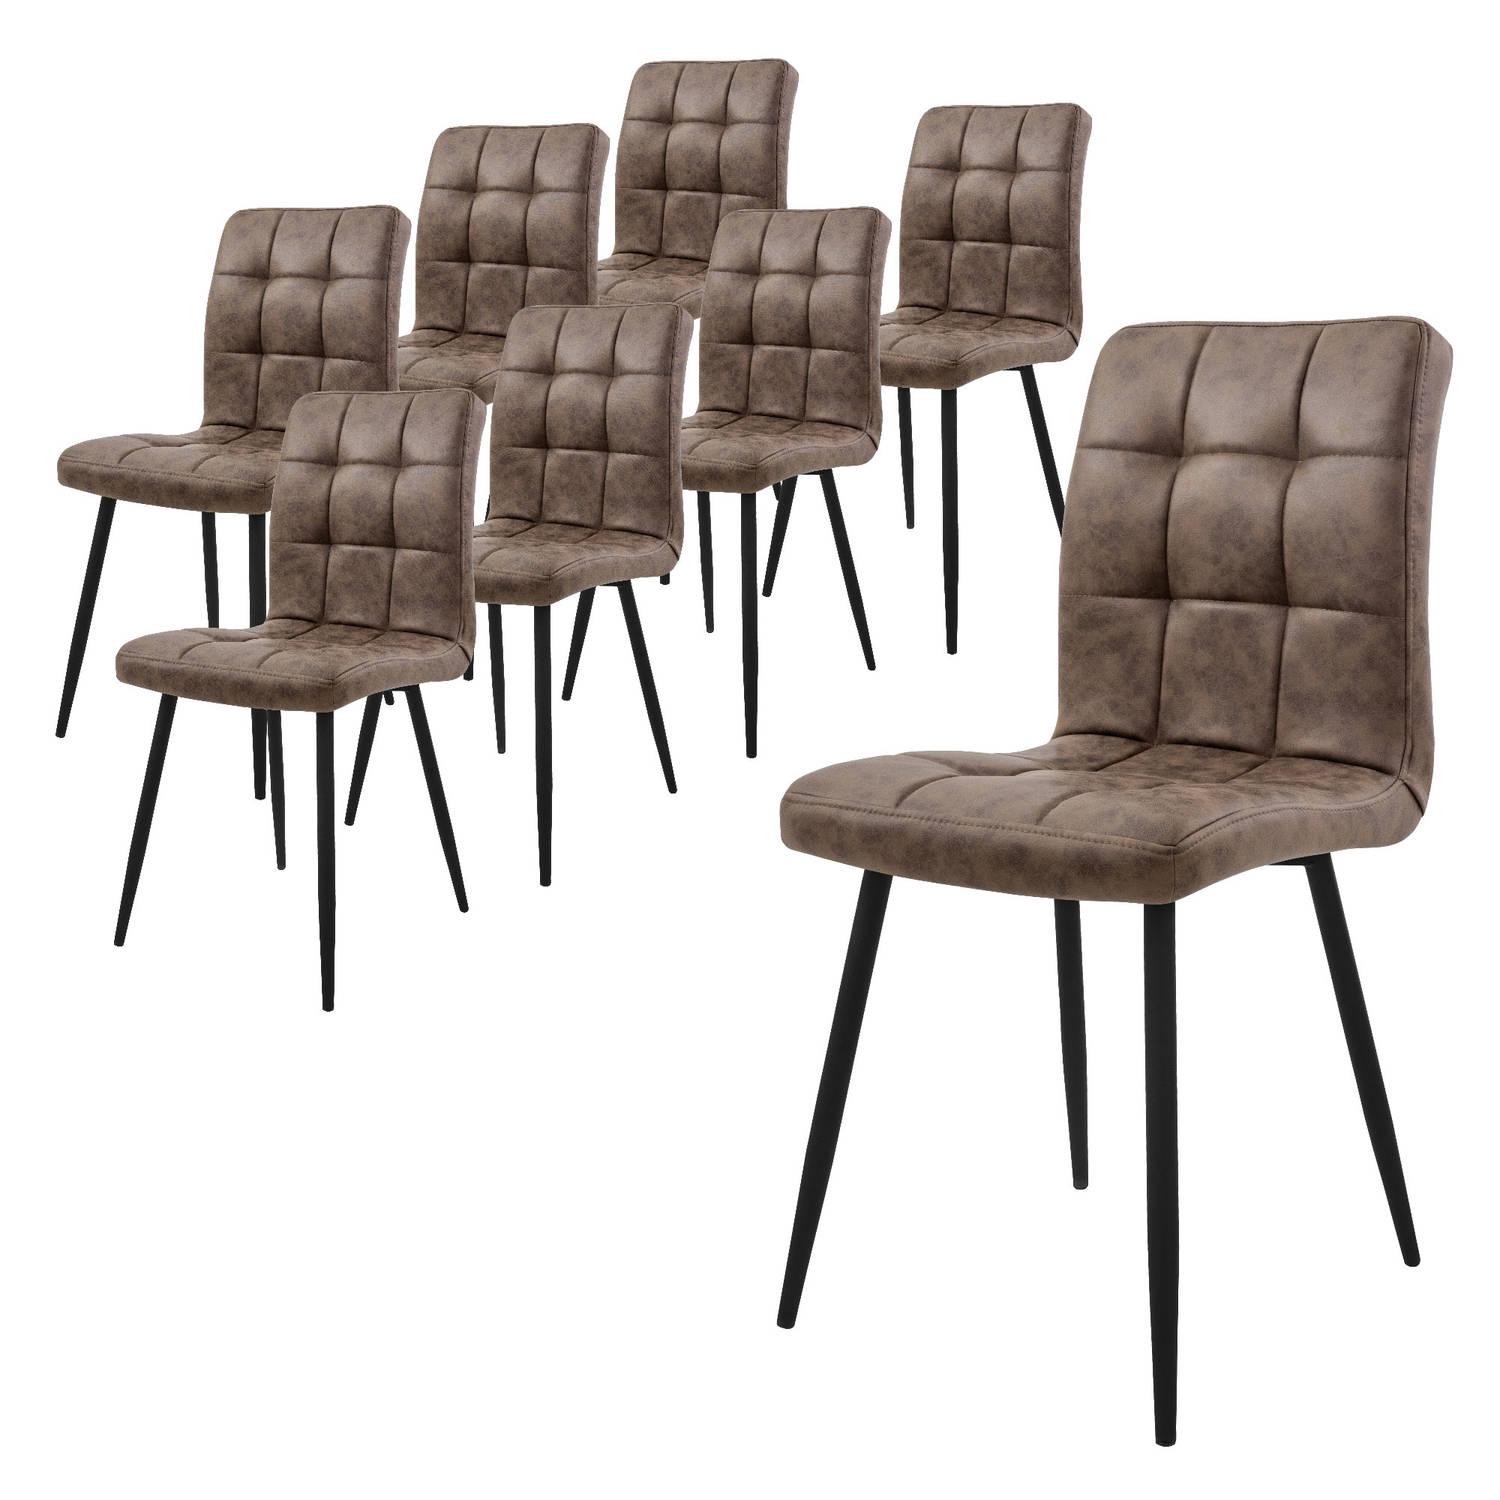 ML-Design eetkamerstoelen set van 8 bruin, keukenstoel met kunstlederen bekleding, woonkamerstoel met rugleuning, gestoffeerde stoel met metalen poten, ergonomische stoel voor eett